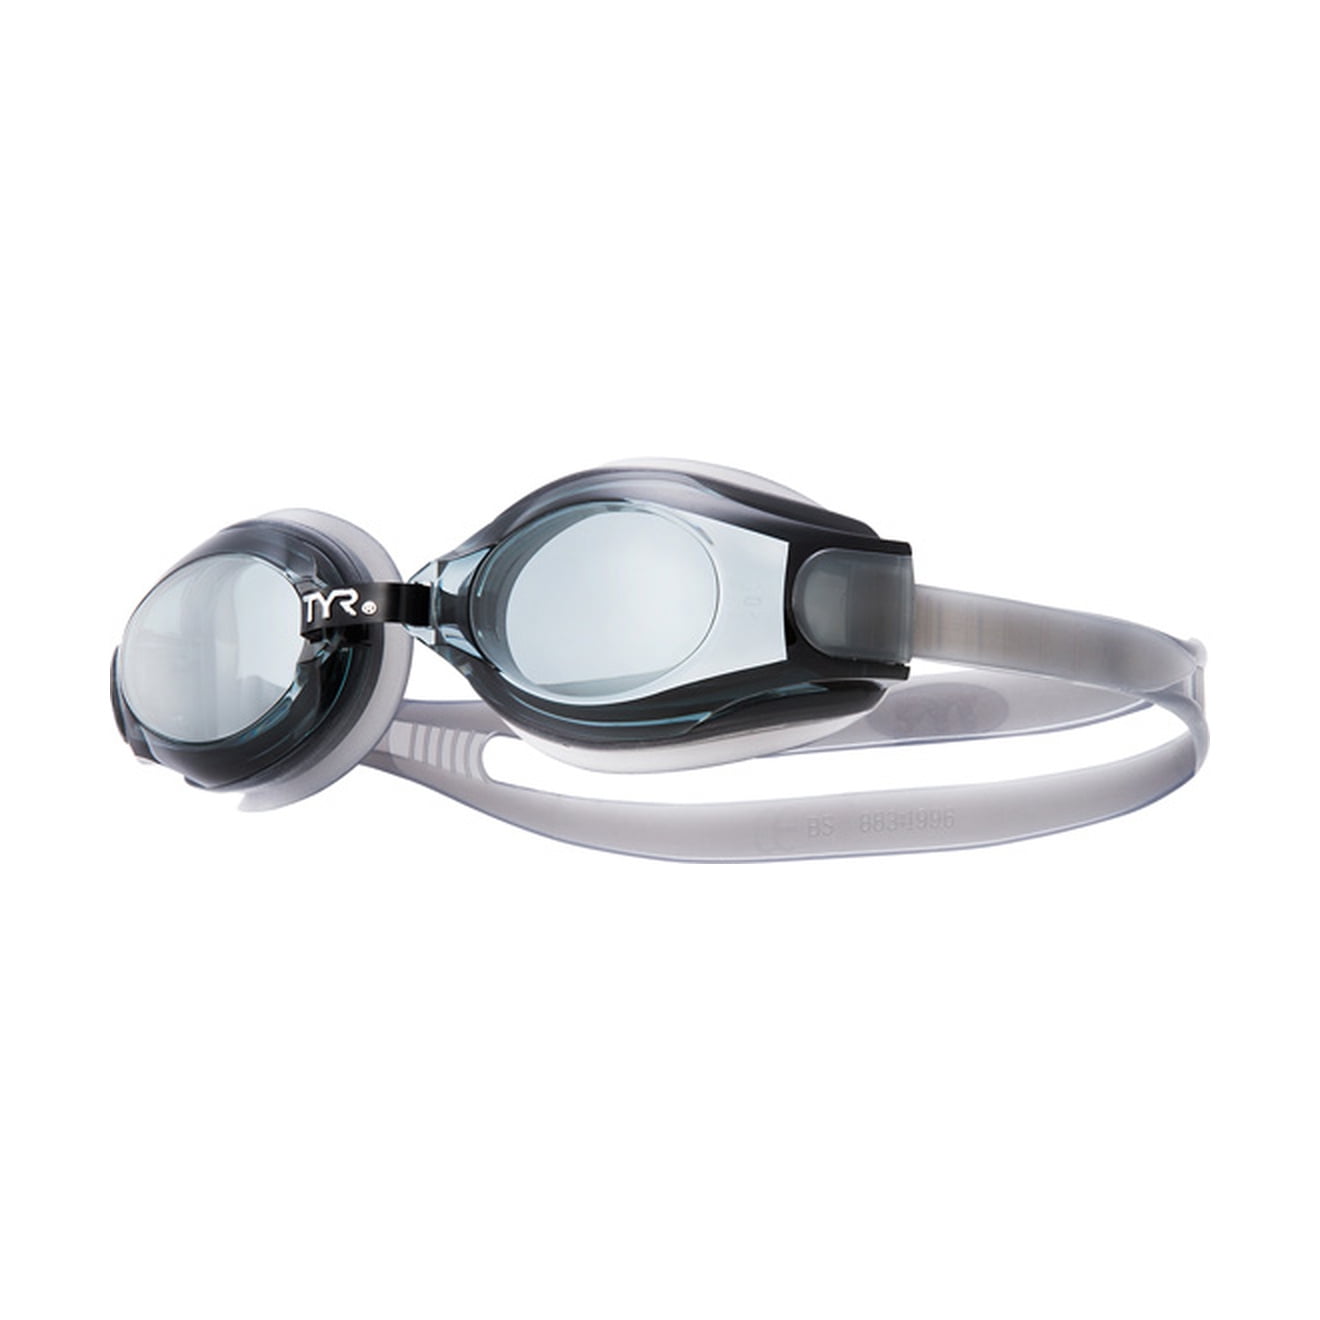 Scuba Choice Black UV Nearsighted Prescription Corrective Optical RX Lenses Swimming Goggles